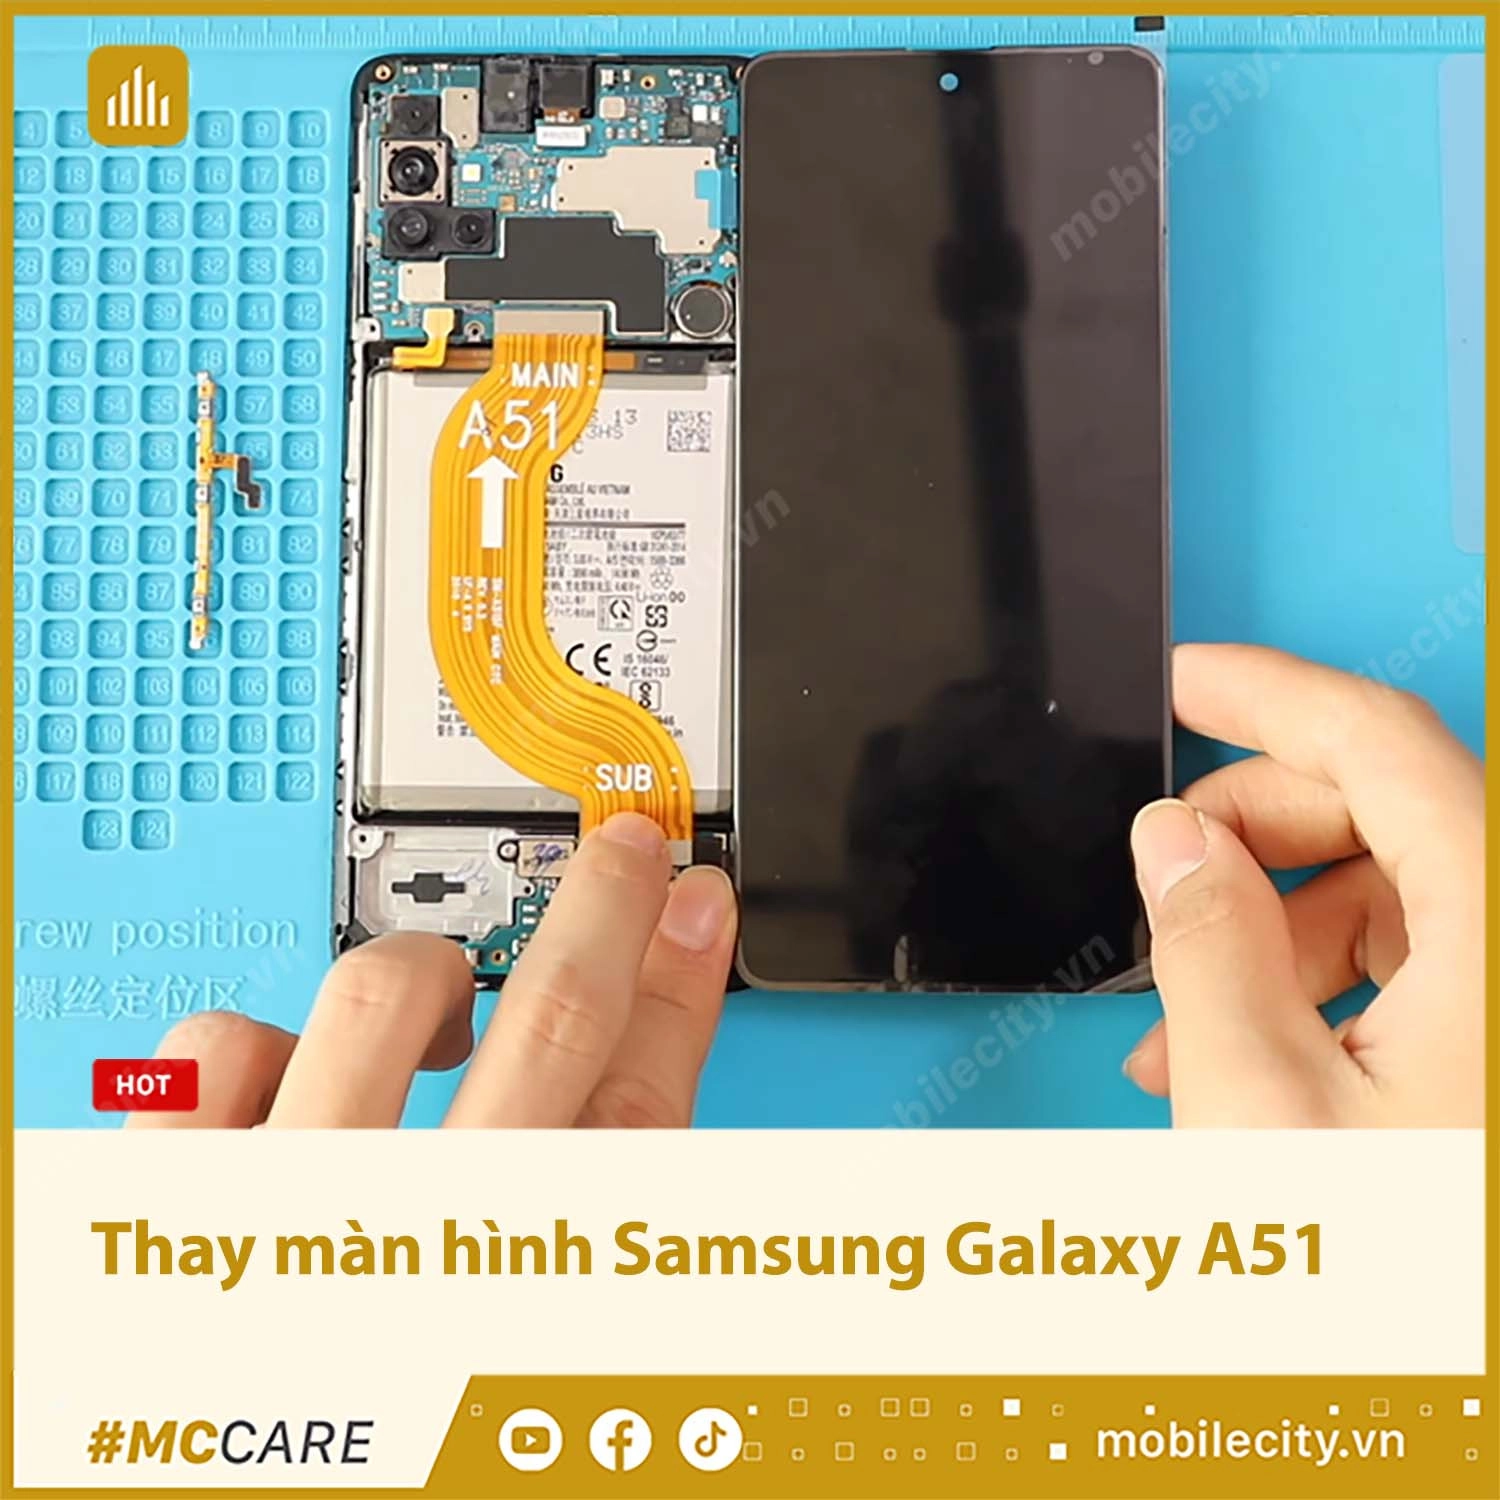 Thay màn hình Samsung Galaxy A51 Chính hãng, giá rẻ tại Hà Nội, Đà Nẵng, Tp.HCM